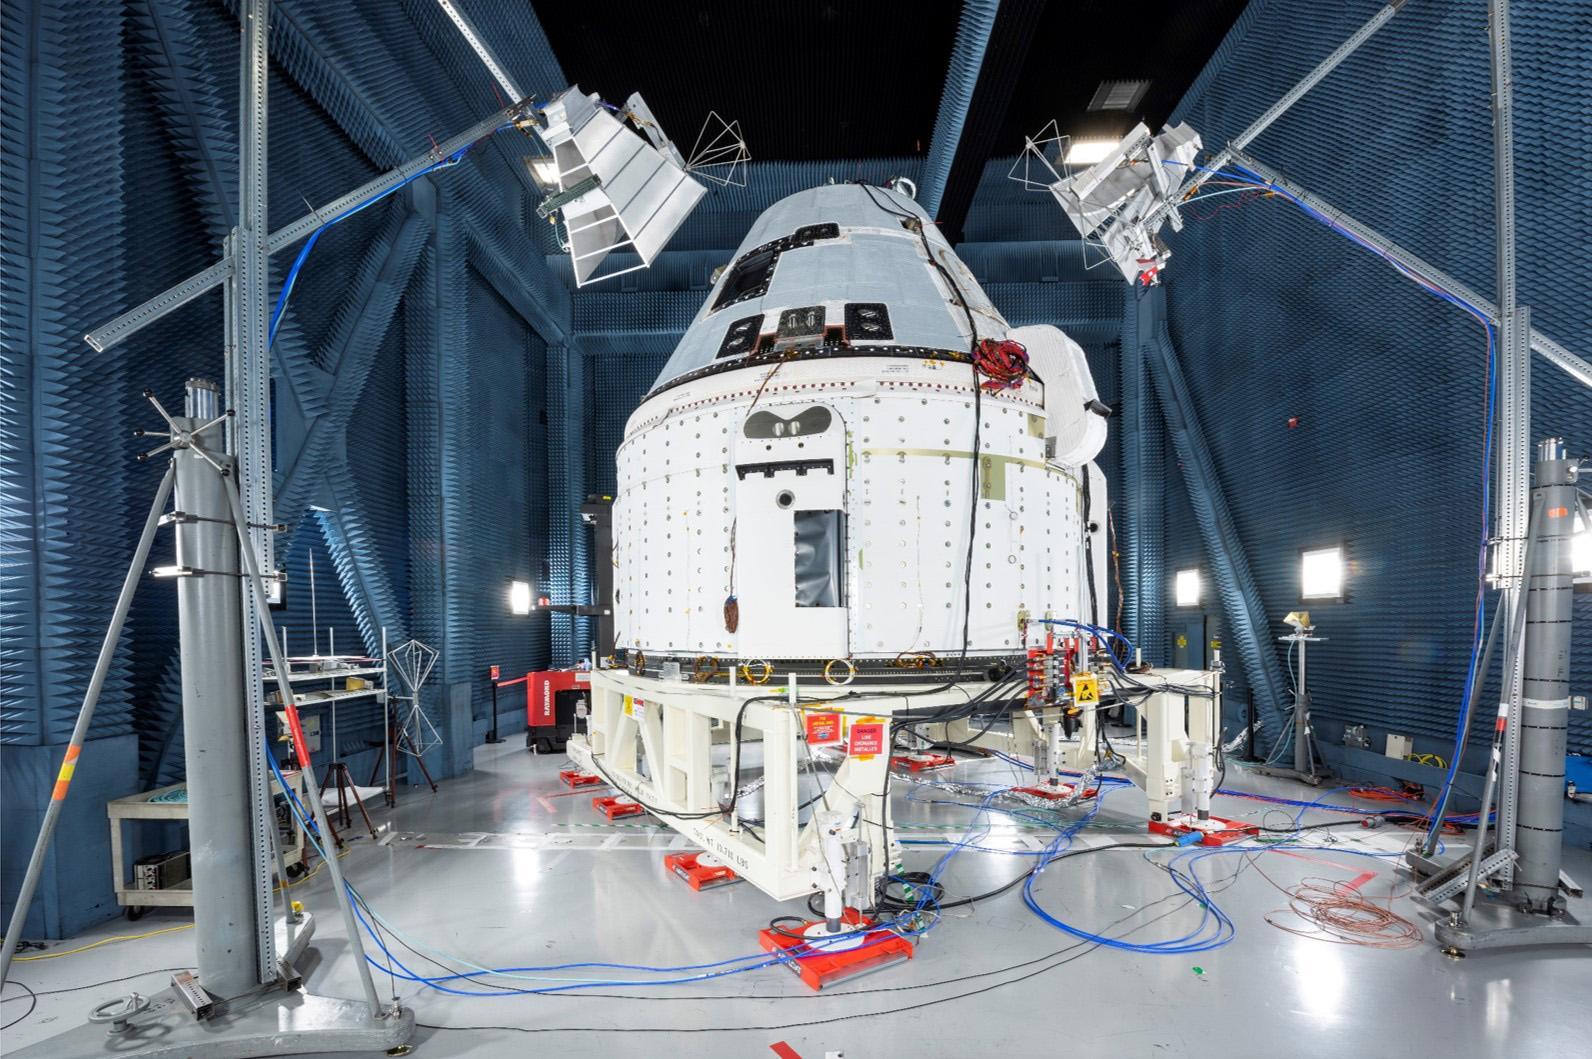  CST-100 स्टारलाइनर कैप्सूल 17 दिसंबर को अंतरिक्ष  में लॉन्च होगा 